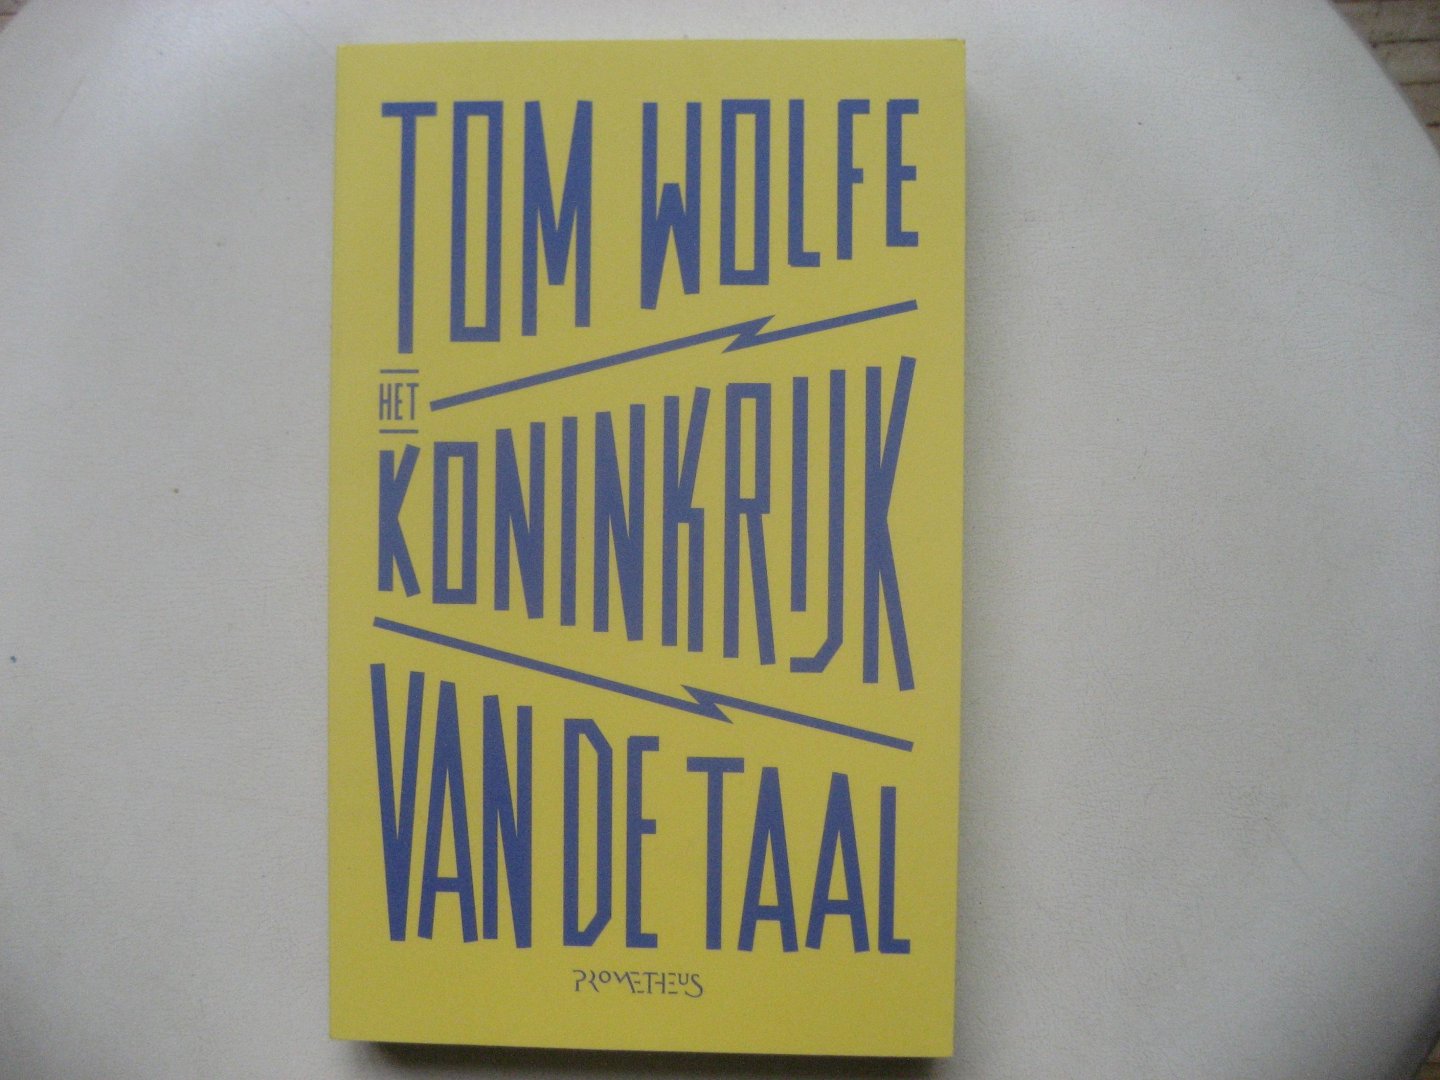 Tom Wolfe - Het Koninkrijk van de Taal